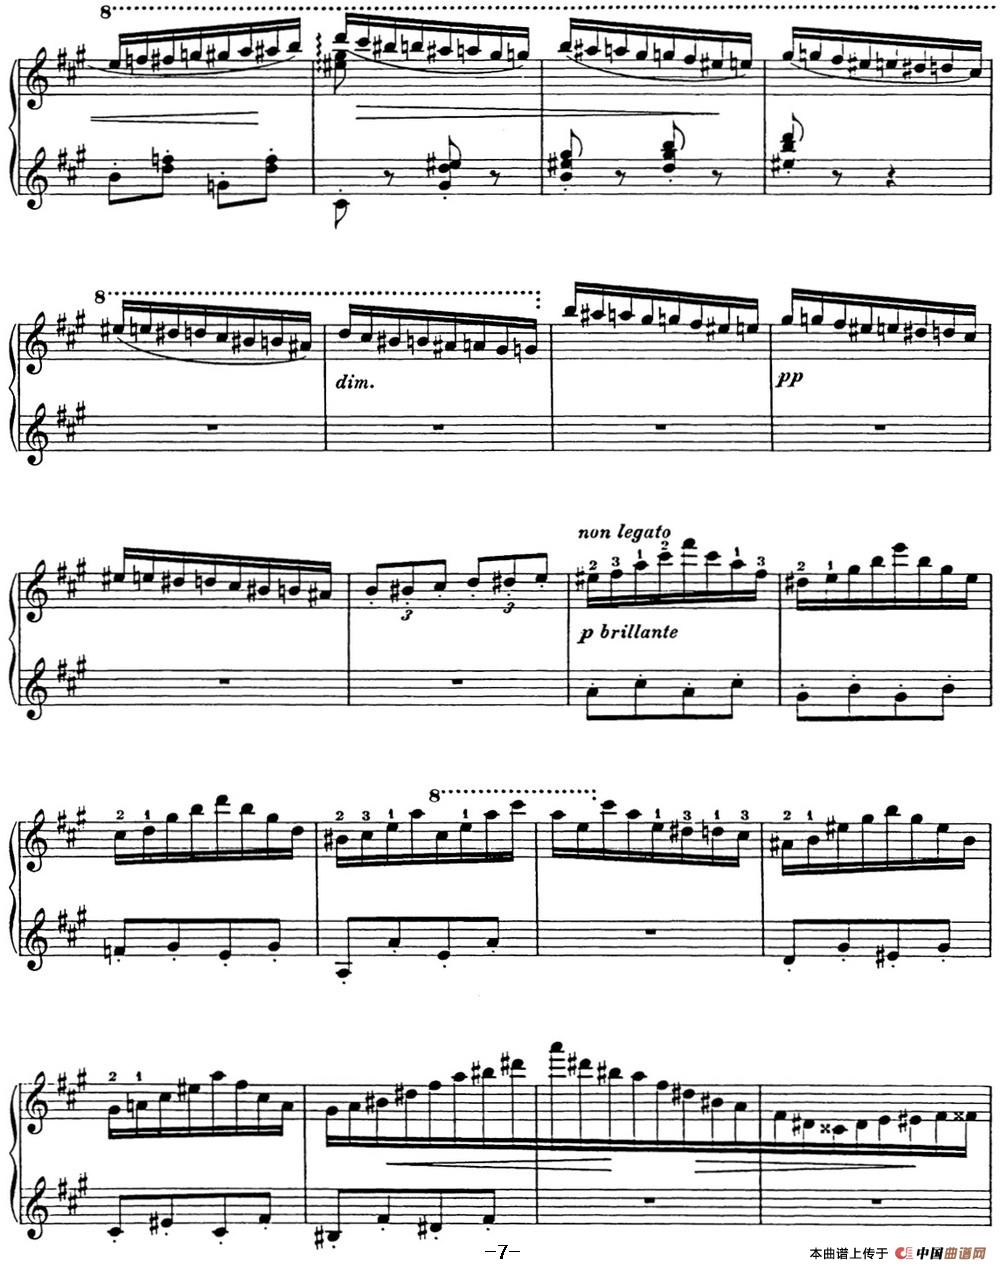 《李斯特 匈牙利狂想曲 Hungarian Rhapsodies S.244 No.11》钢琴曲谱图分享